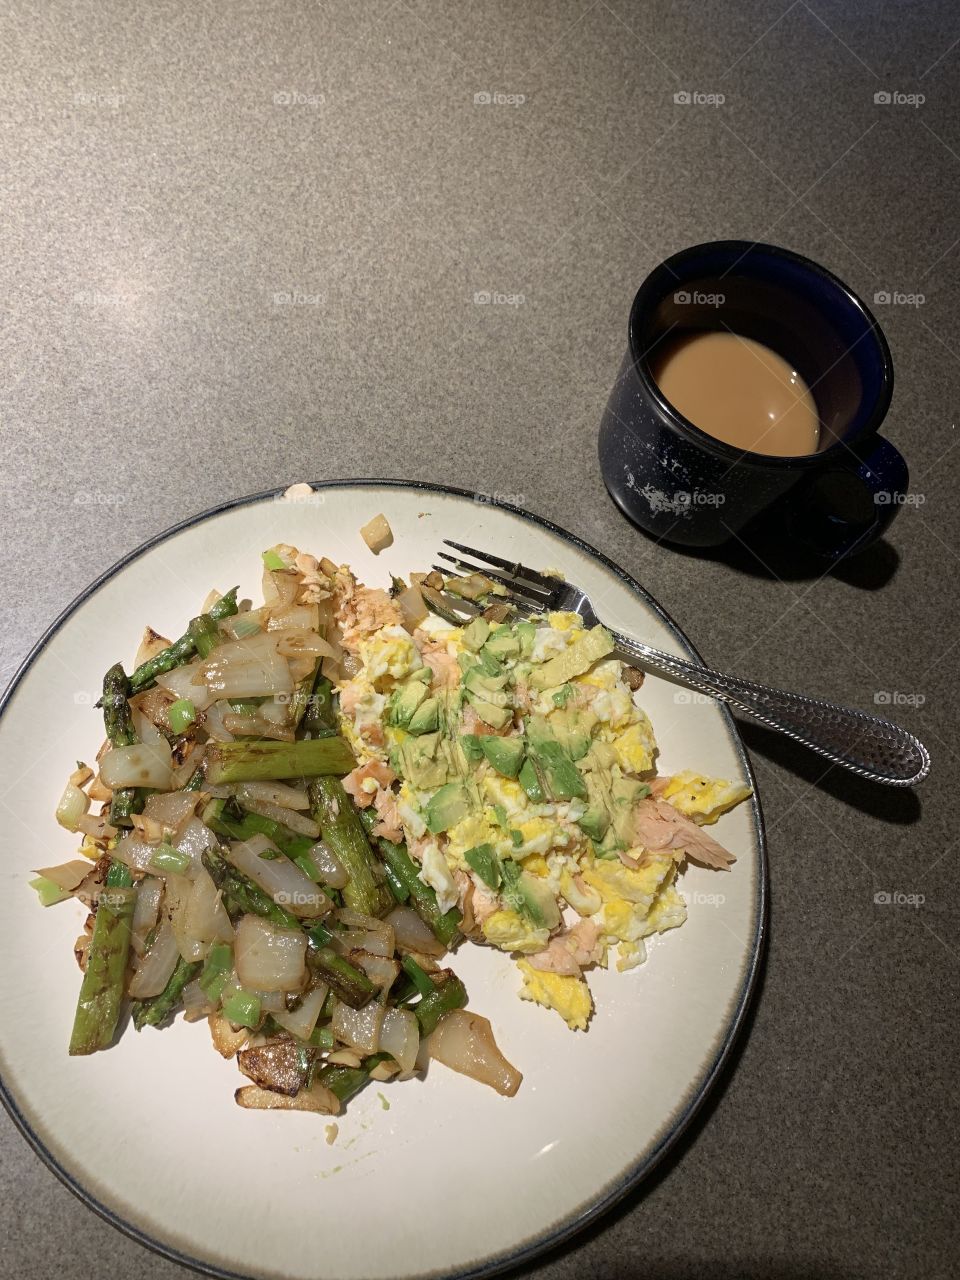 Healthy breakfast!